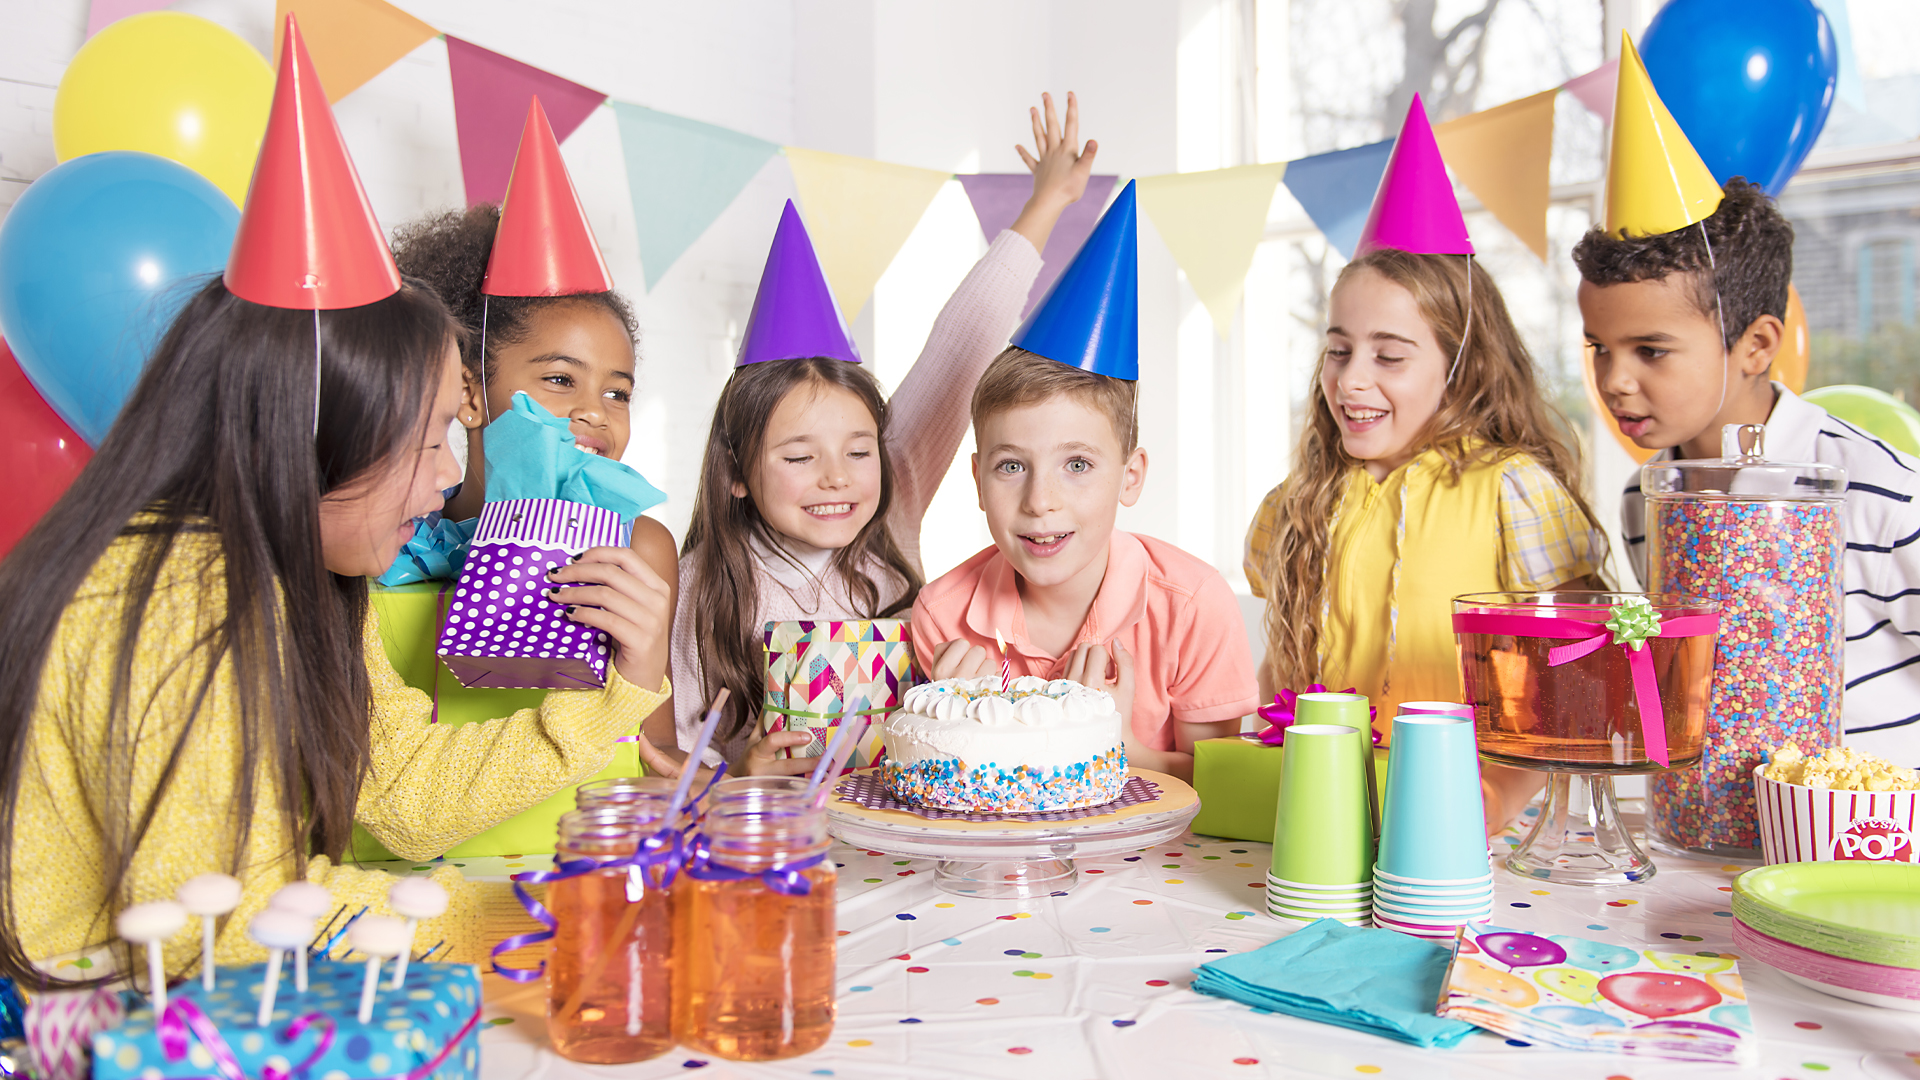 Platos, globos, mantel, invitaciones y más para una fiesta infantil